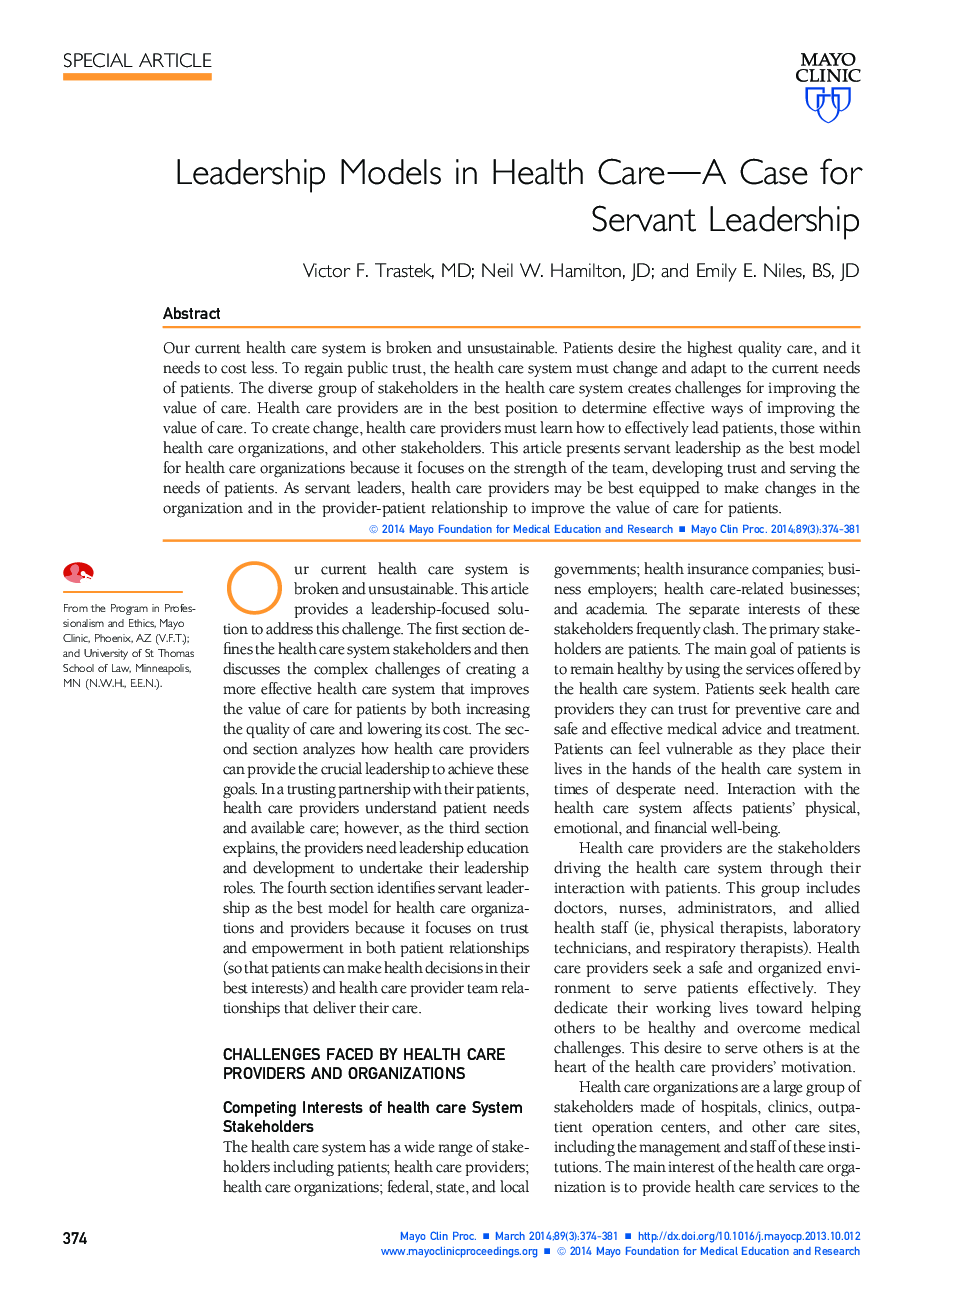 مدل های رهبری در مراقبت های بهداشتی - مورد برای رهبری خدمتکار 